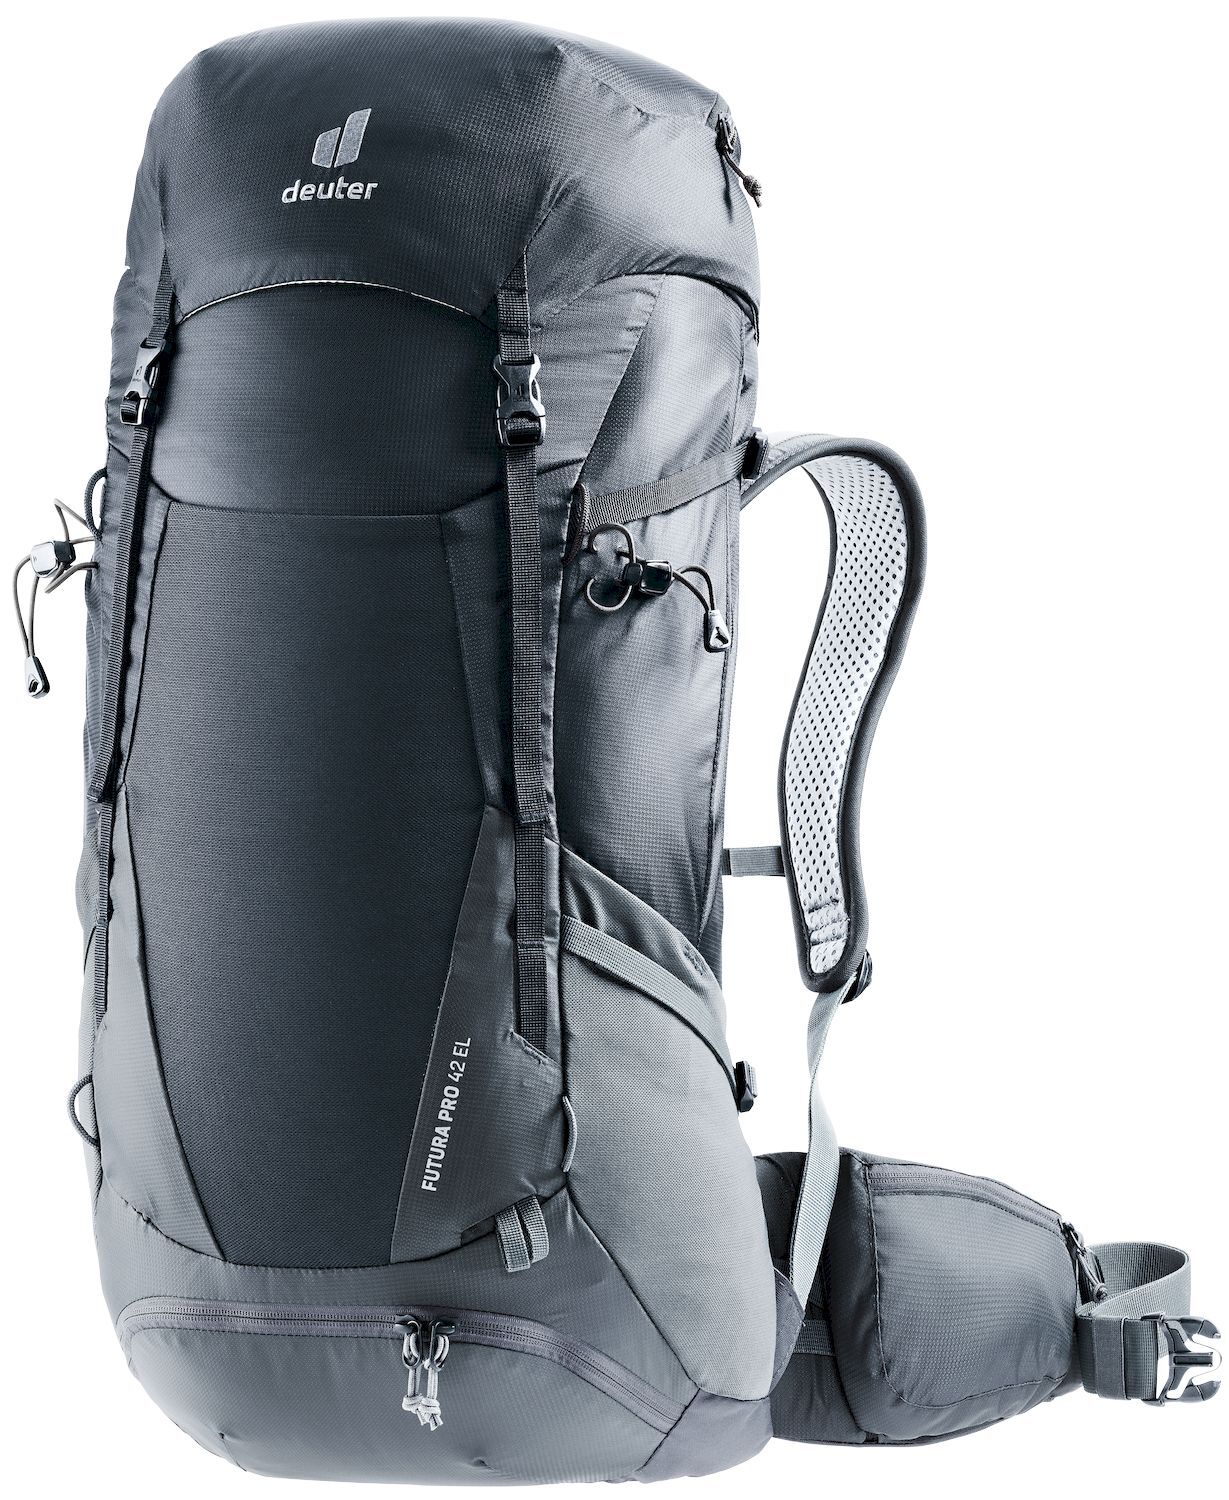 Deuter Futura Pro 42 EL - Walking backpack - Men's